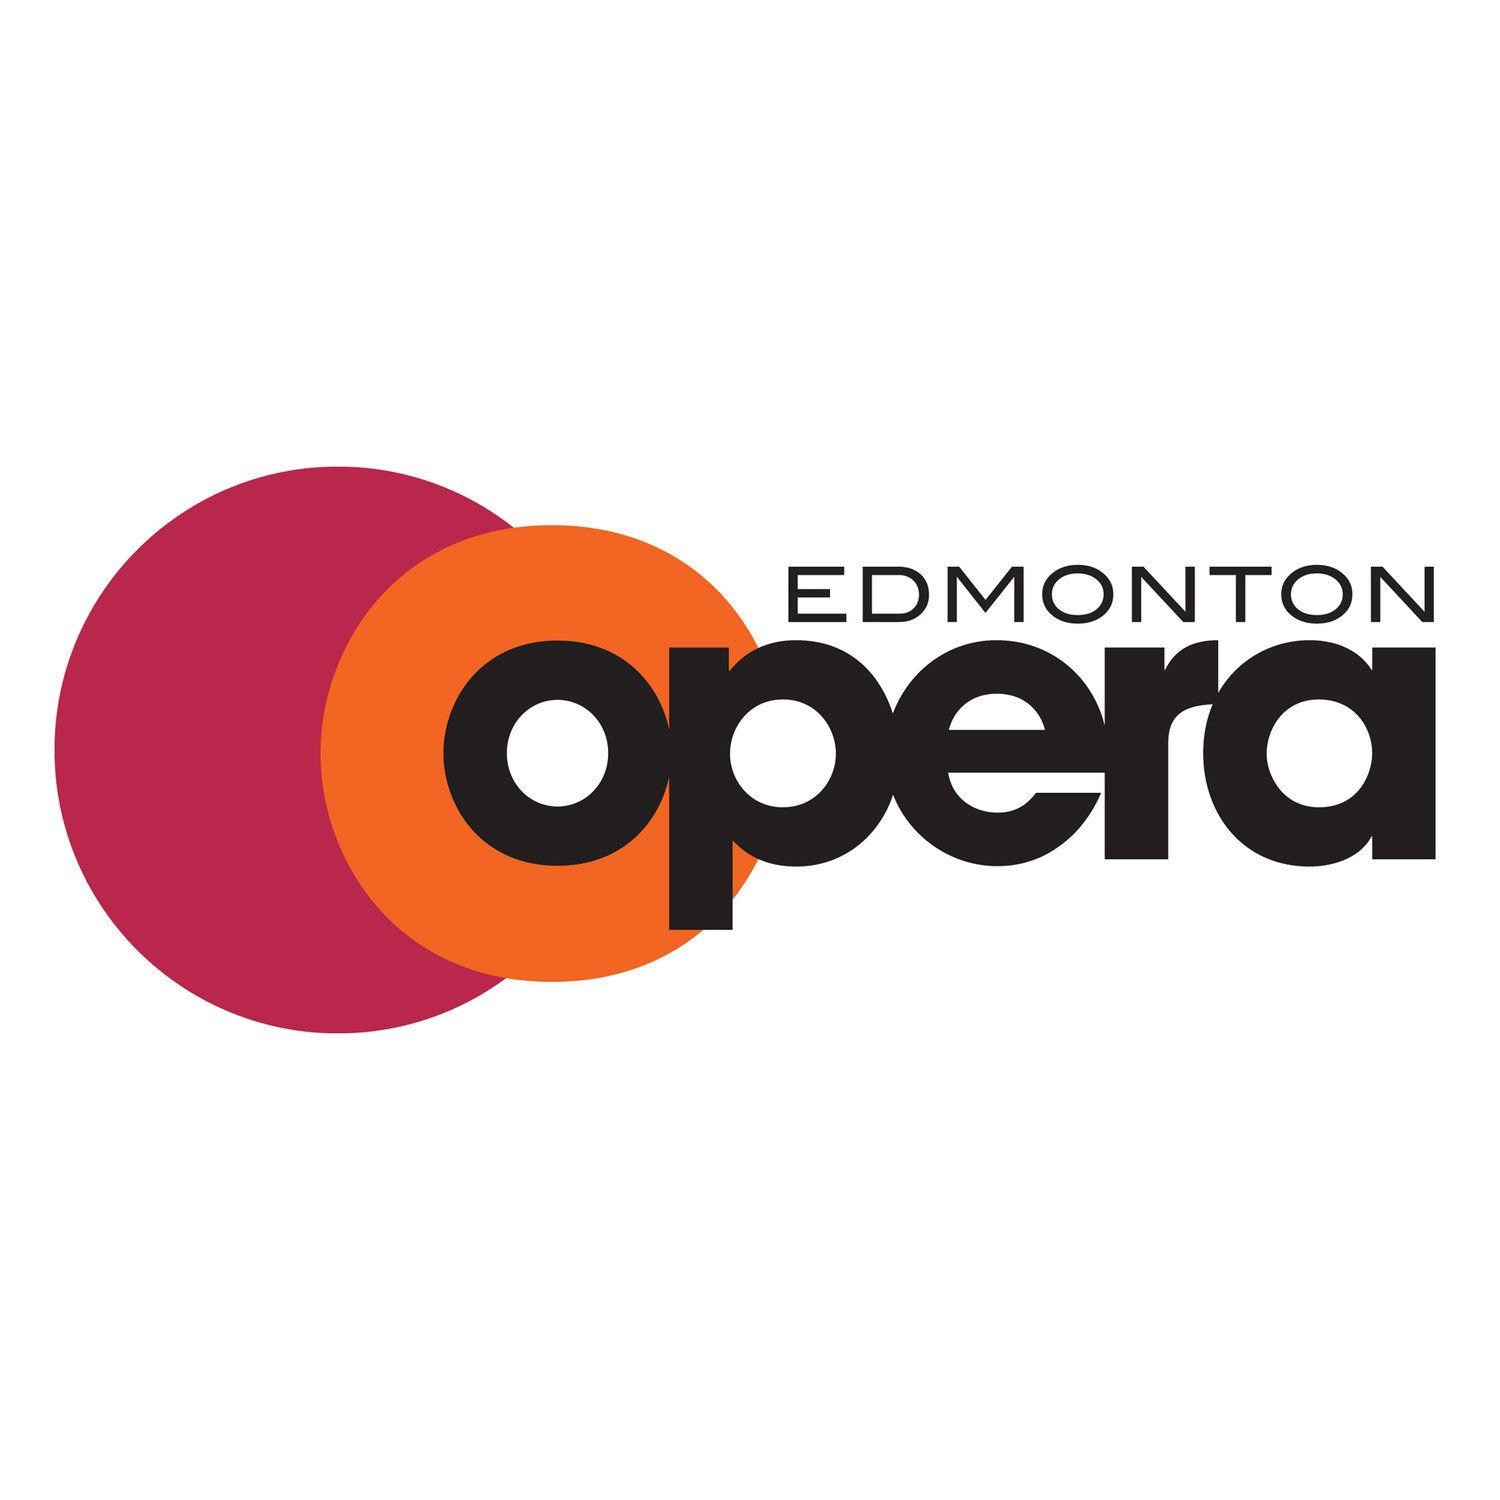 Edmonton Logo - Edmonton Opera